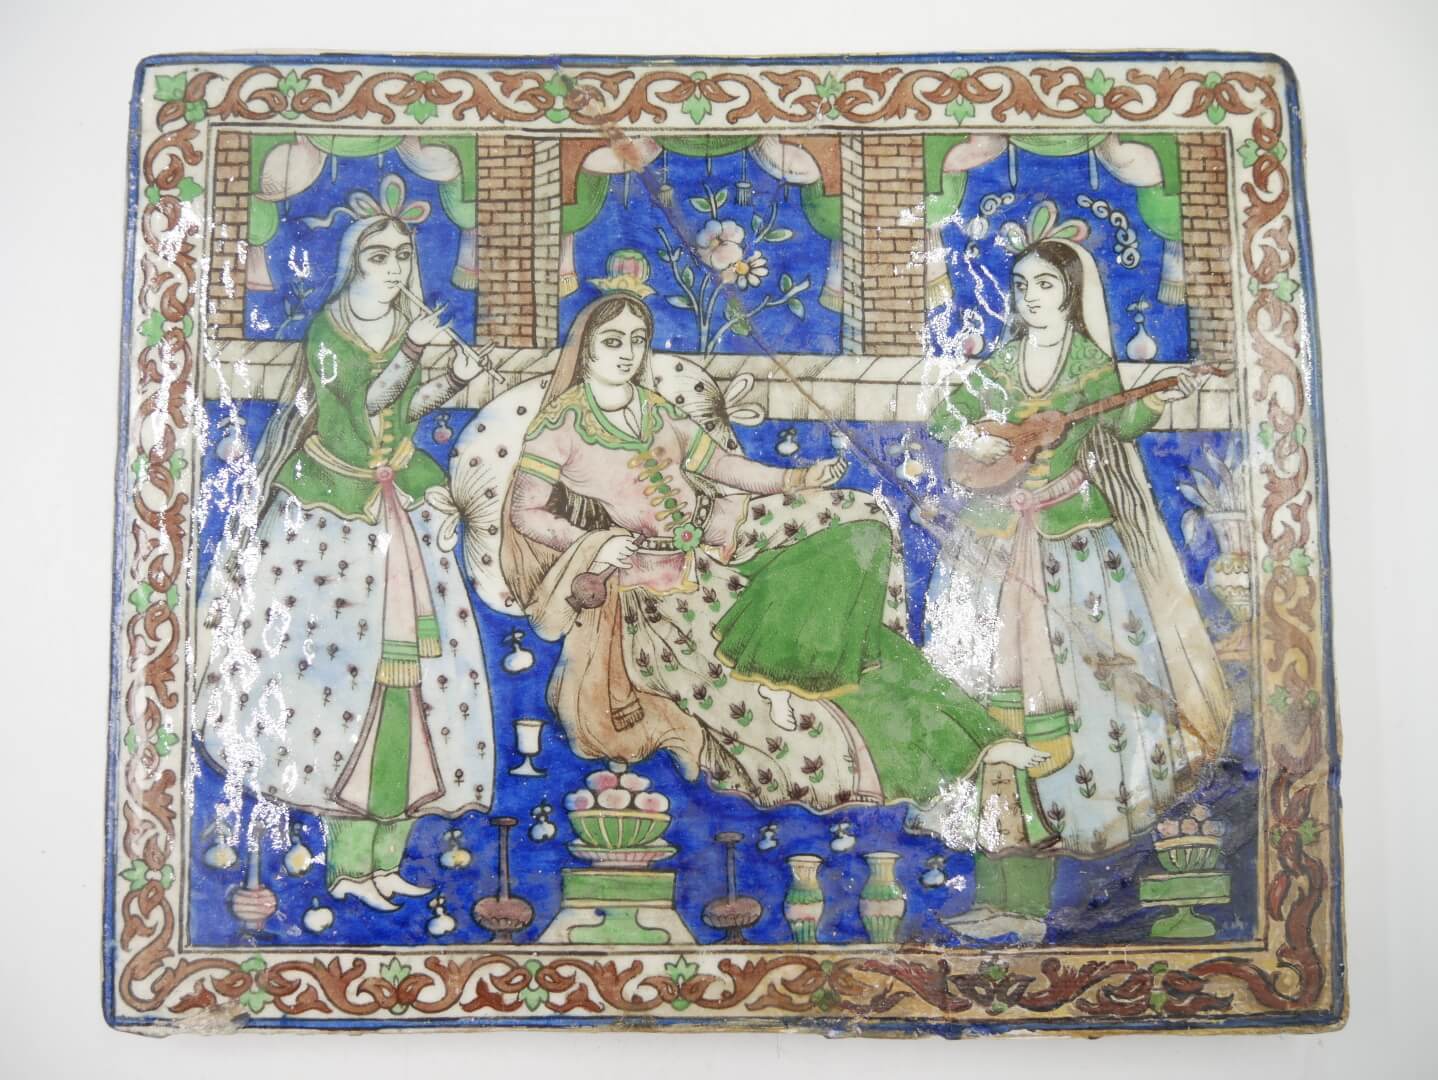 IRAN QÂJÂR - Seconde moitié du XIXe siècle - Plaque en céramique ornée d’une scène de délassement. Carreau de revêtement